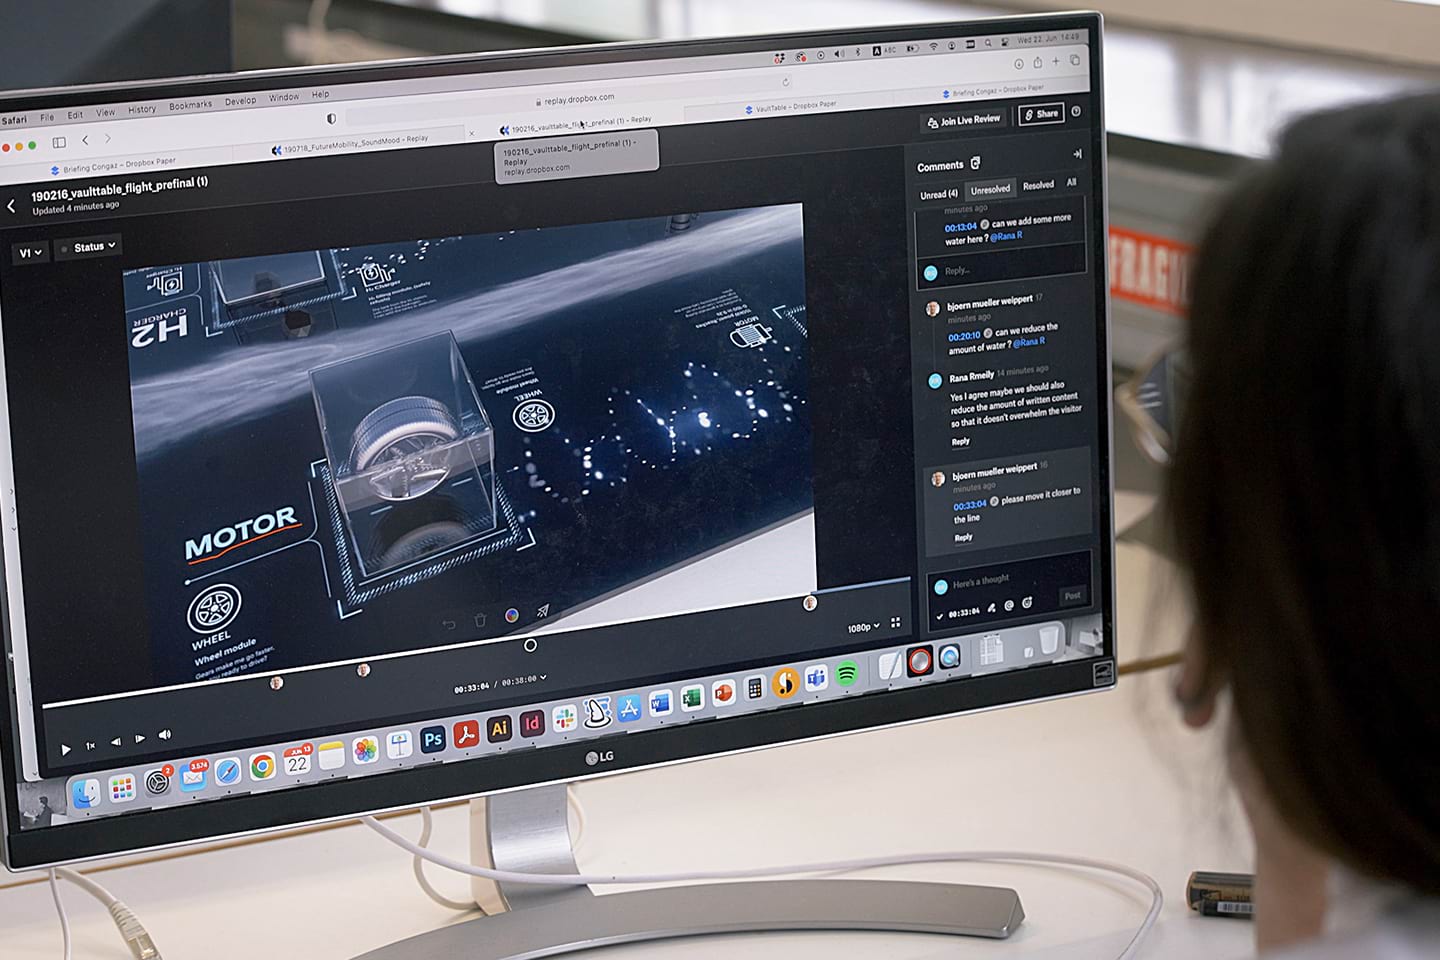 A tela do computador mostra uma pessoa trabalhando em edições de vídeo no Dropbox Replay